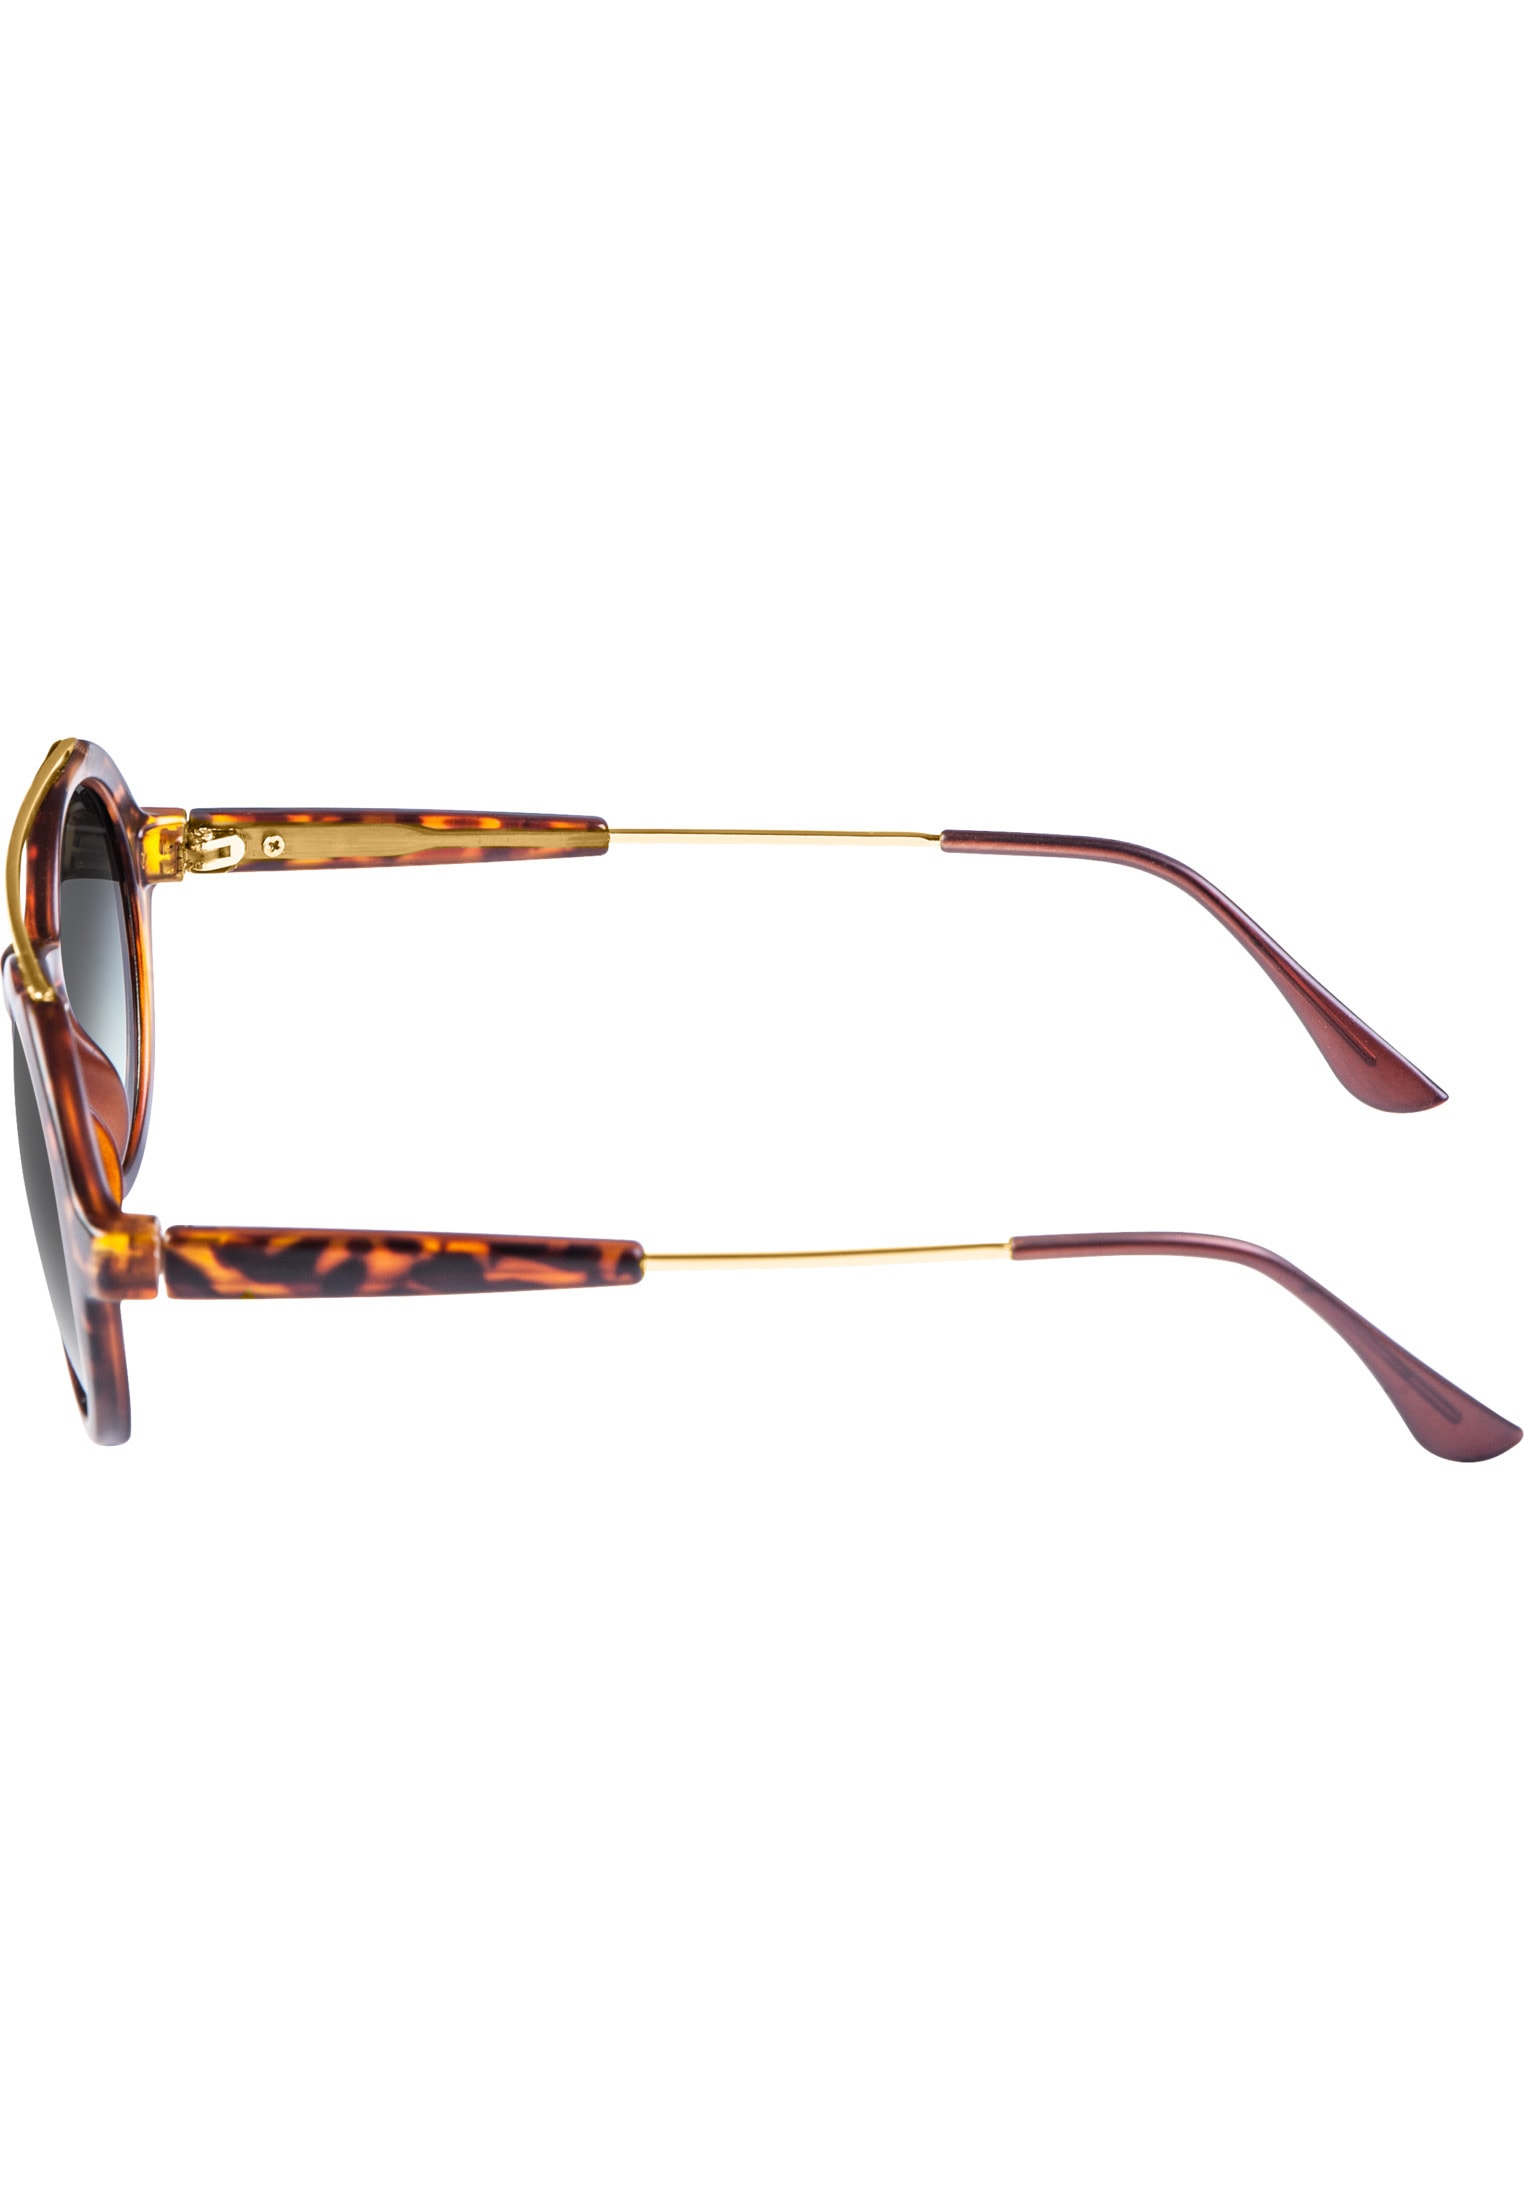 MSTRDS Sonnenbrille »Accessoires Sunglasses Retro Space« online kaufen |  I'm walking